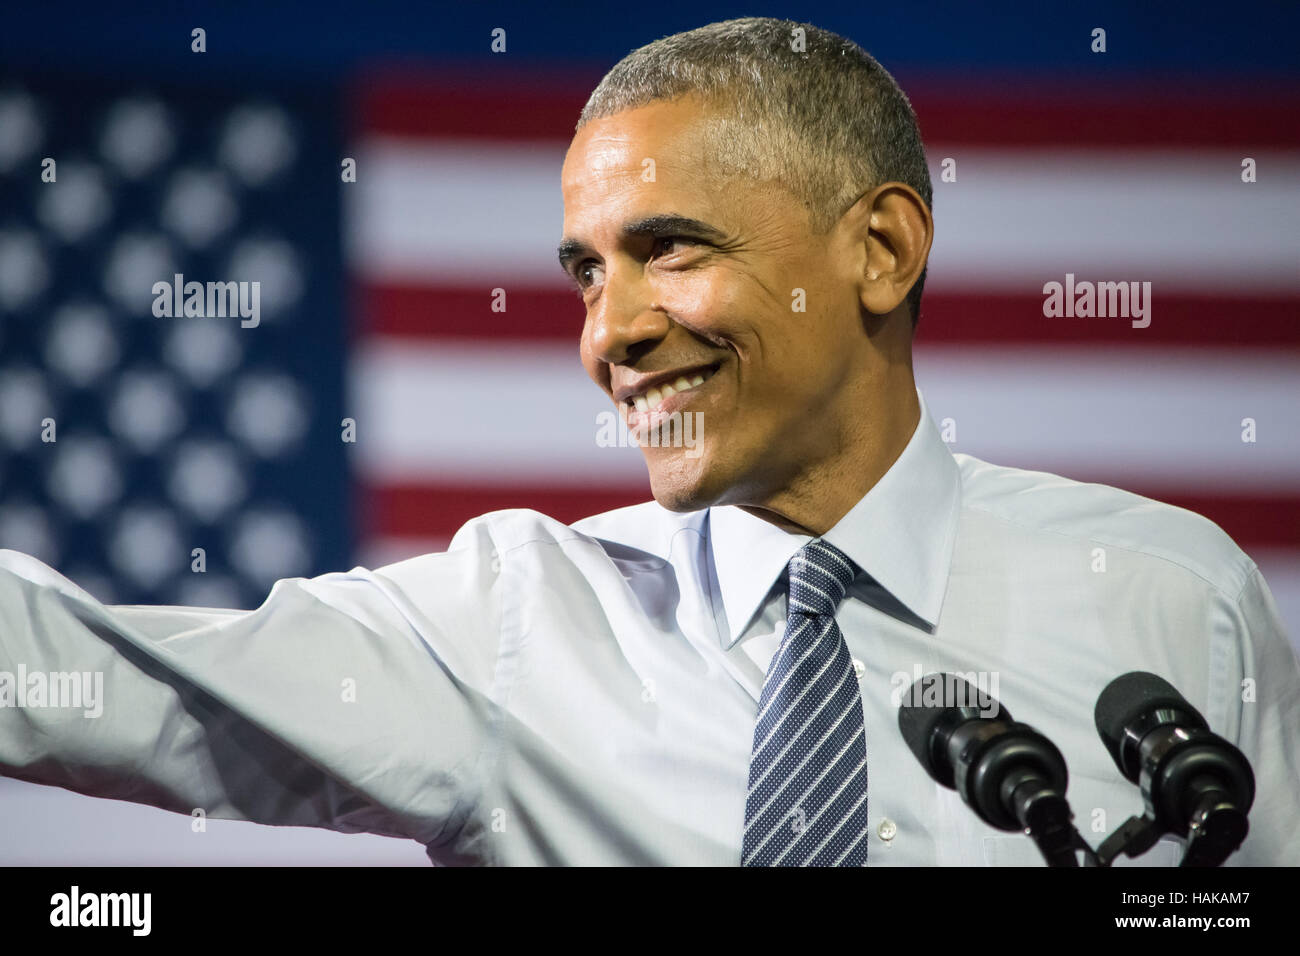 Barack Obama, presidente de los Estados Unidos. Sonriendo con su brazo derecho extendido hacia la multitud. Foto de stock